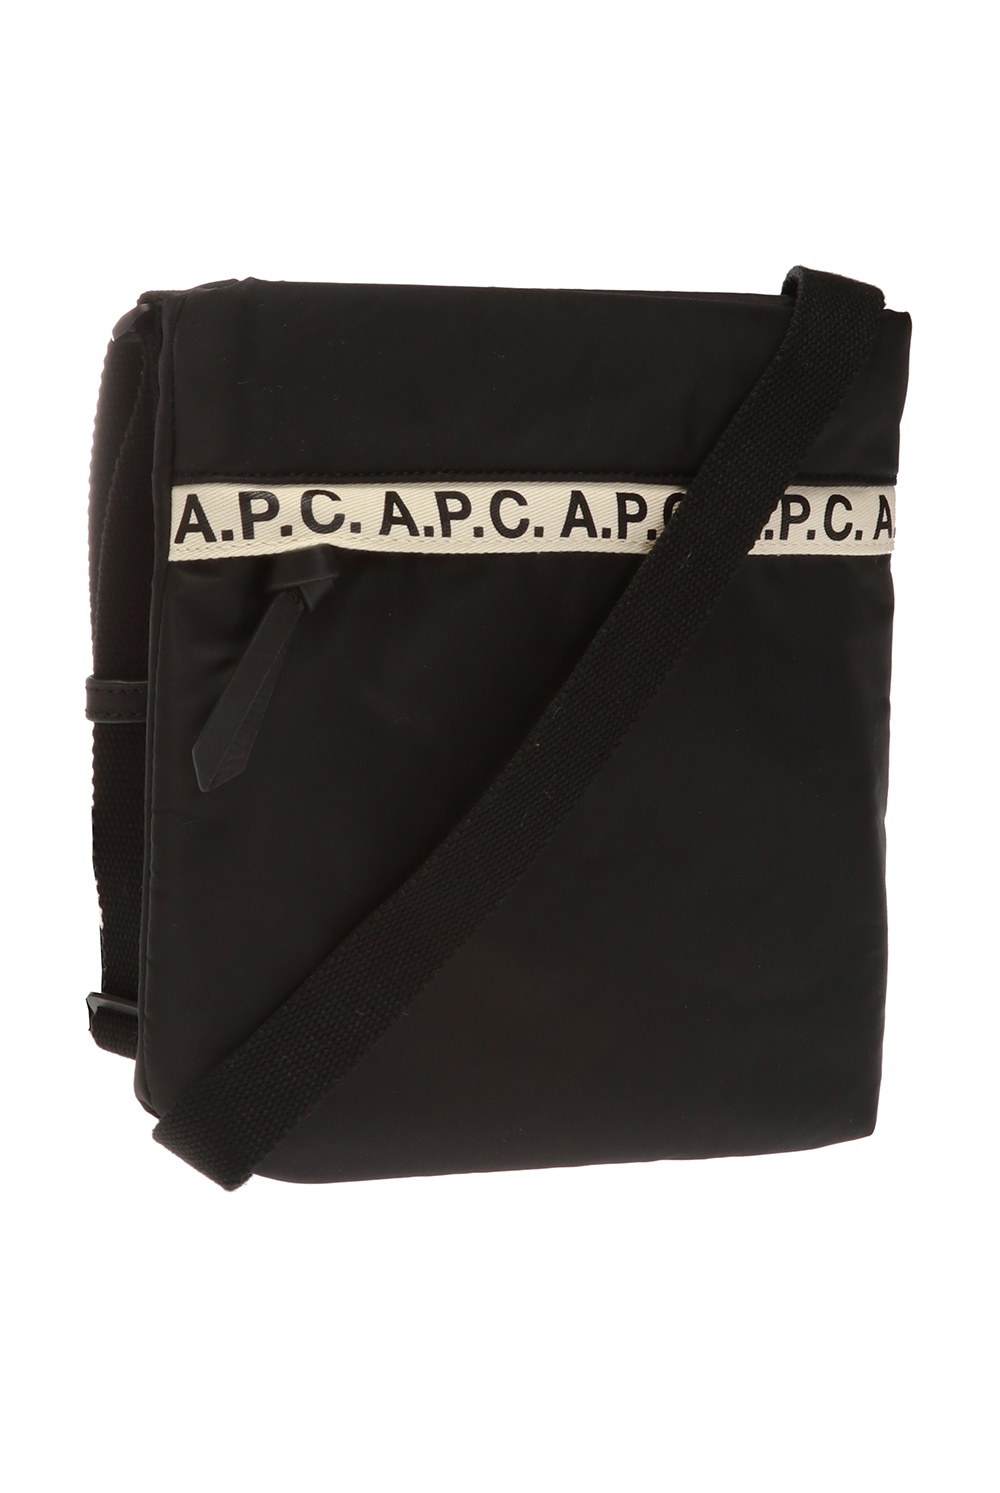 A.P.C. ami paris large ami de coeur stud accordion bag item